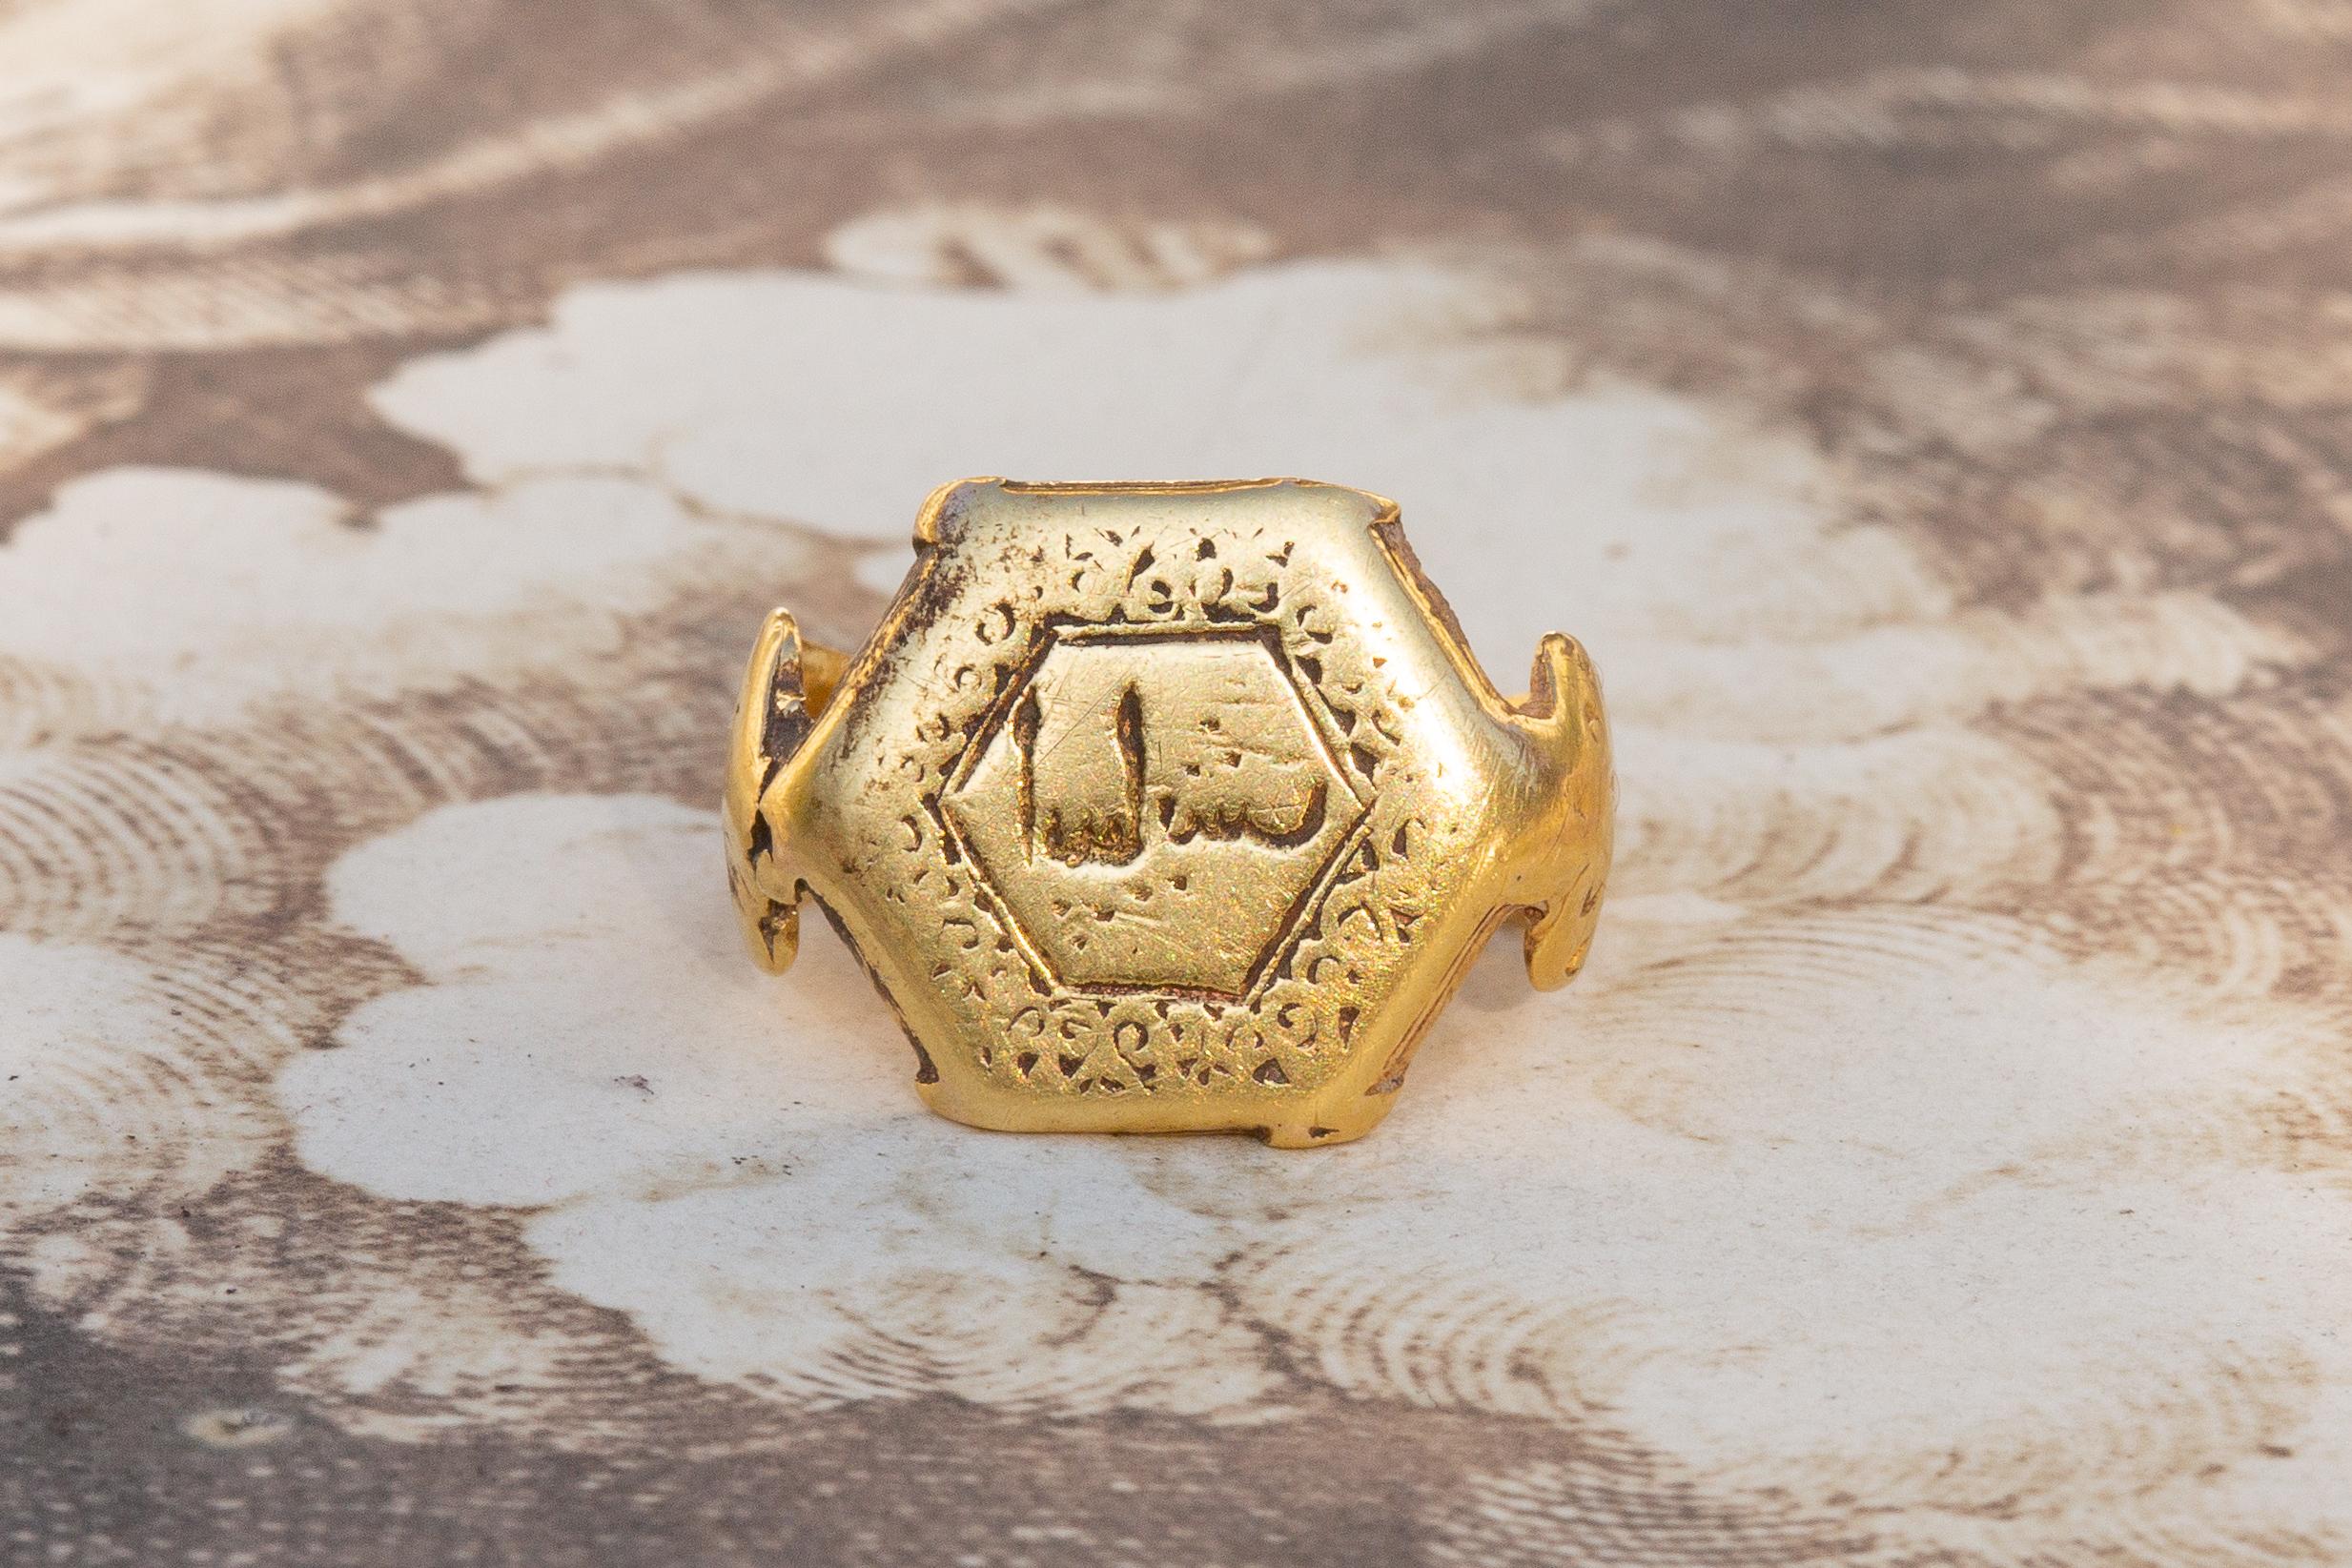 Cette bague en or 21 carats, petite mais puissante, date de la dynastie seldjoukide du 11e au 13e siècle. La lunette hexagonale présente une inscription cursive négative à l'intérieur d'une bordure contenant des motifs d'arabesques et de volutes. Il